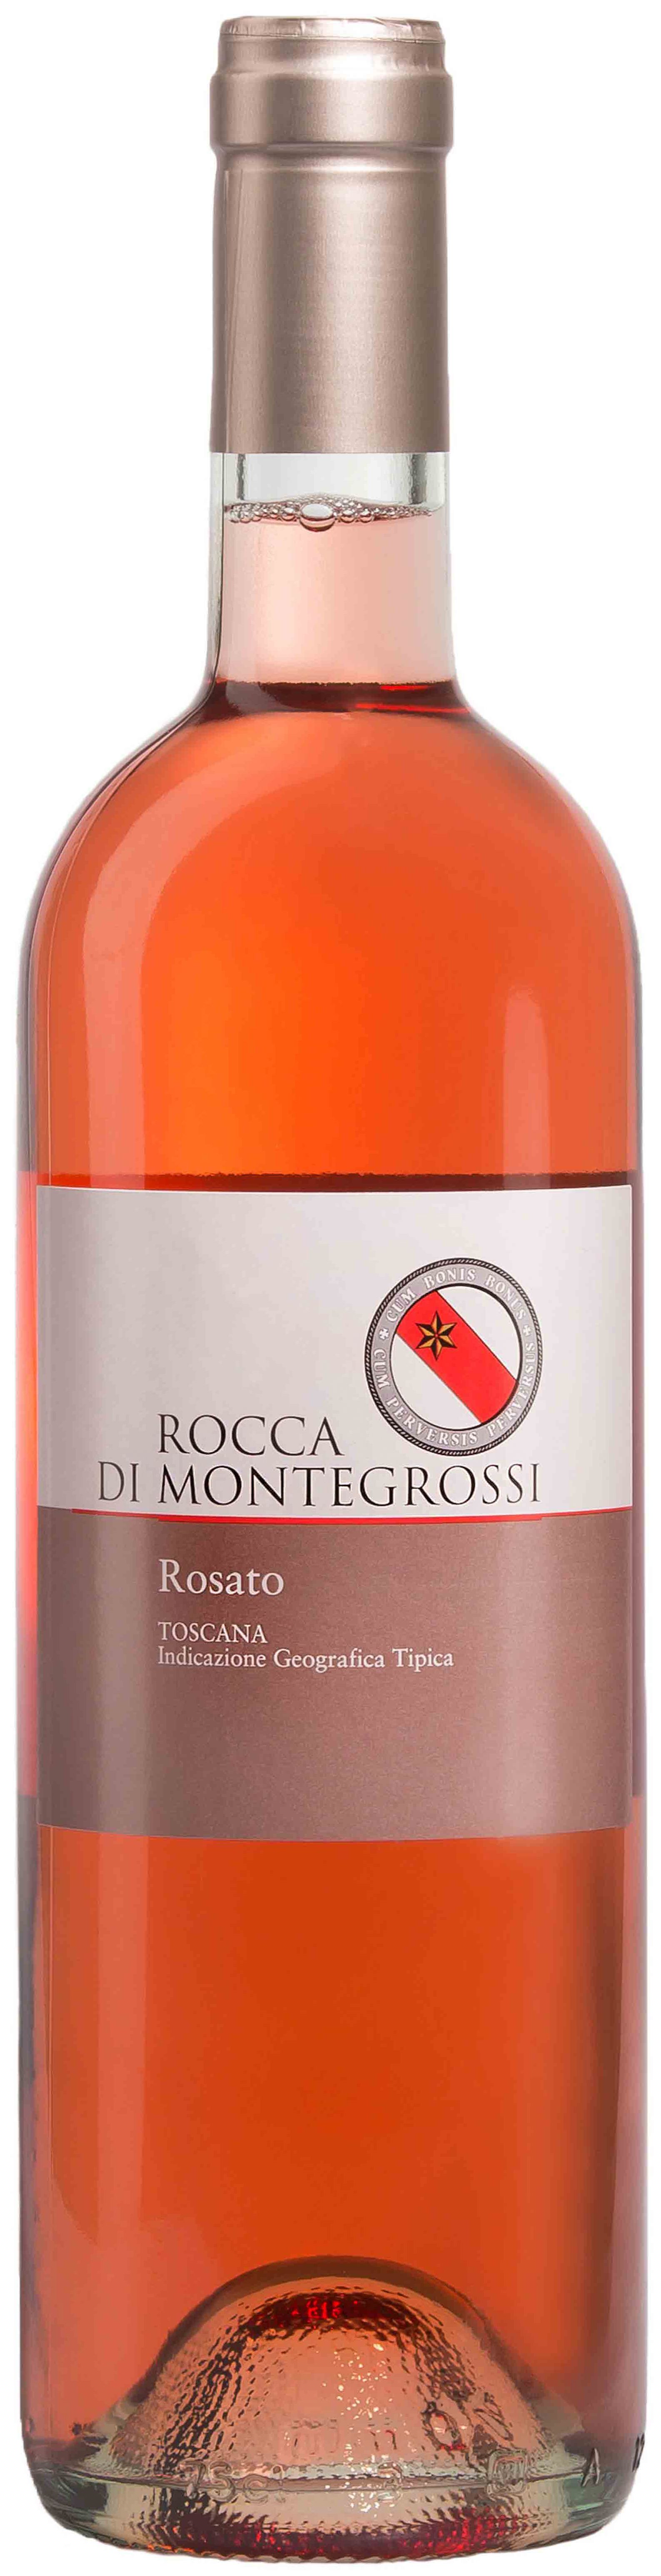 Rocca Di Montegrossi, Rosato, 2020